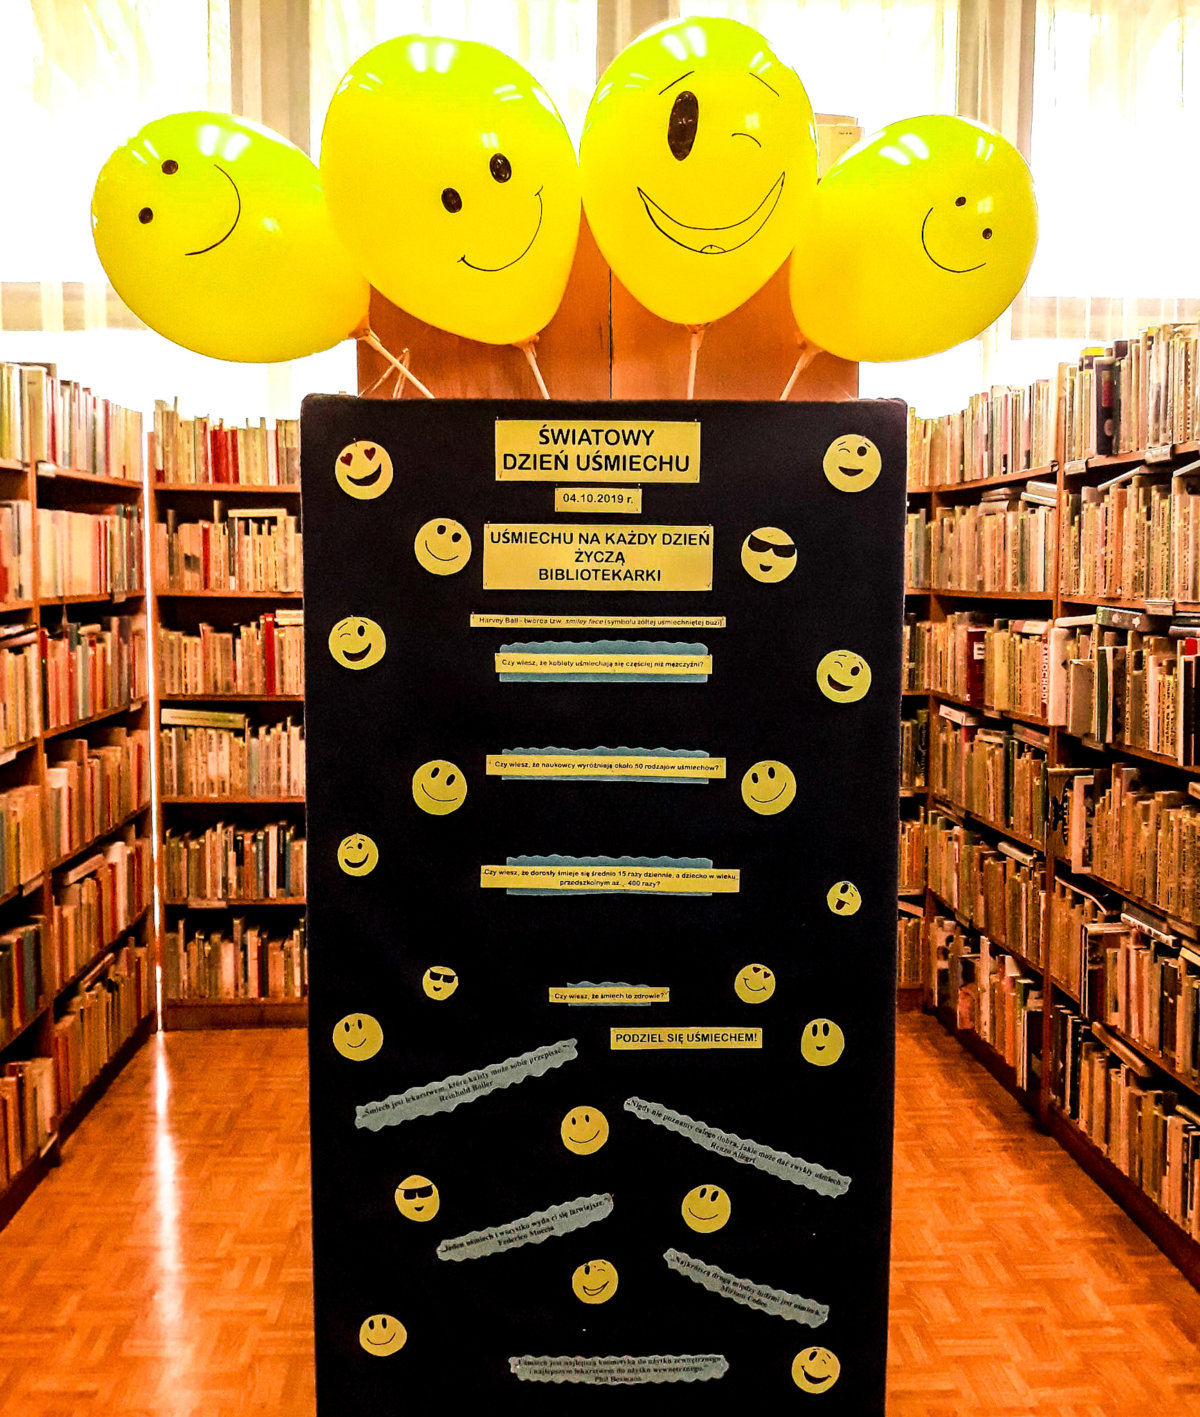 W pierwszy piątek października obchodziliśmy Światowy Dzień Uśmiechu. Niestety w tym dniu biblioteka była zamknięta, dlatego postanowiłyśmy wynagrodzić naszym czytelnikom tę niedogodność i w poniedziałek (07/10/2019 r.) zorganizowałyśmy dla nich niewielką akcję biblioteczną. Odwiedzający Filię nr 14 mogli zapoznać się z ciekawostkami dotyczącymi uśmiechania się oraz przeczytać optymistycznie brzmiące cytaty. Czytelnicy mieli także możliwość zabrania ze sobą "uśmiechu na wynos".